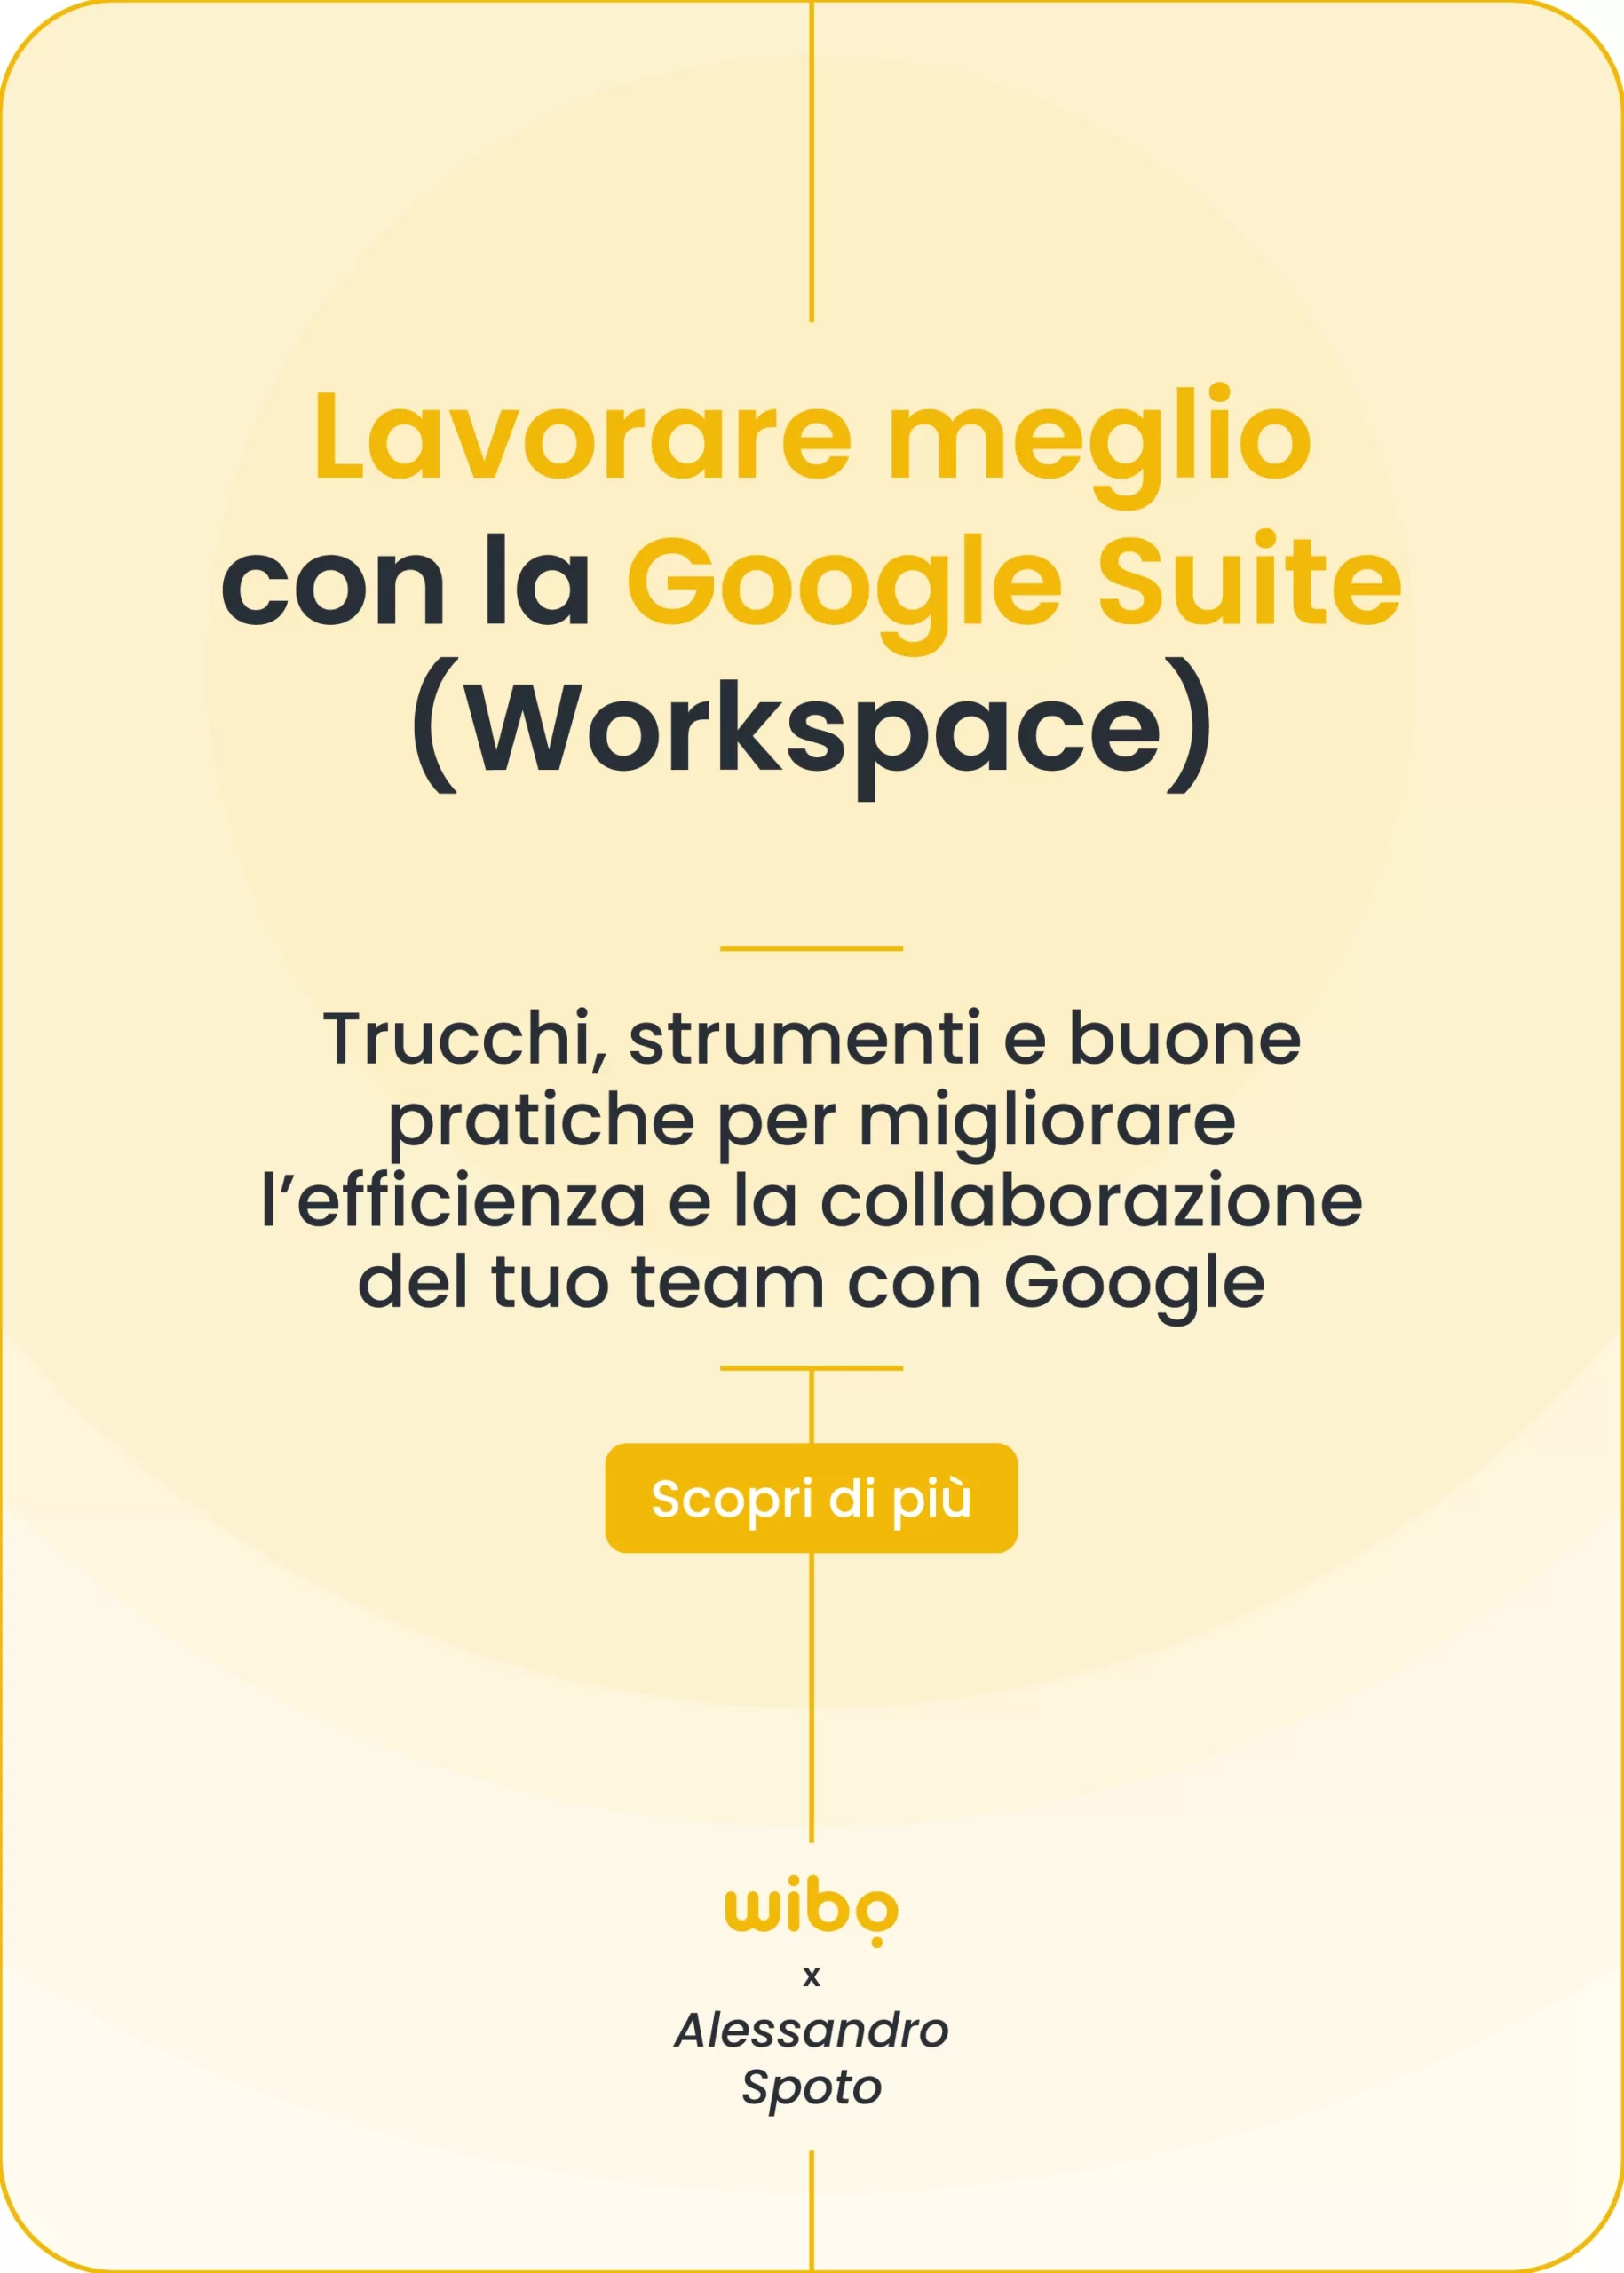 Lavorare meglio con la Google Suite: Percorso di formazione aziendale in collaborazione con Alessandro Spoto.